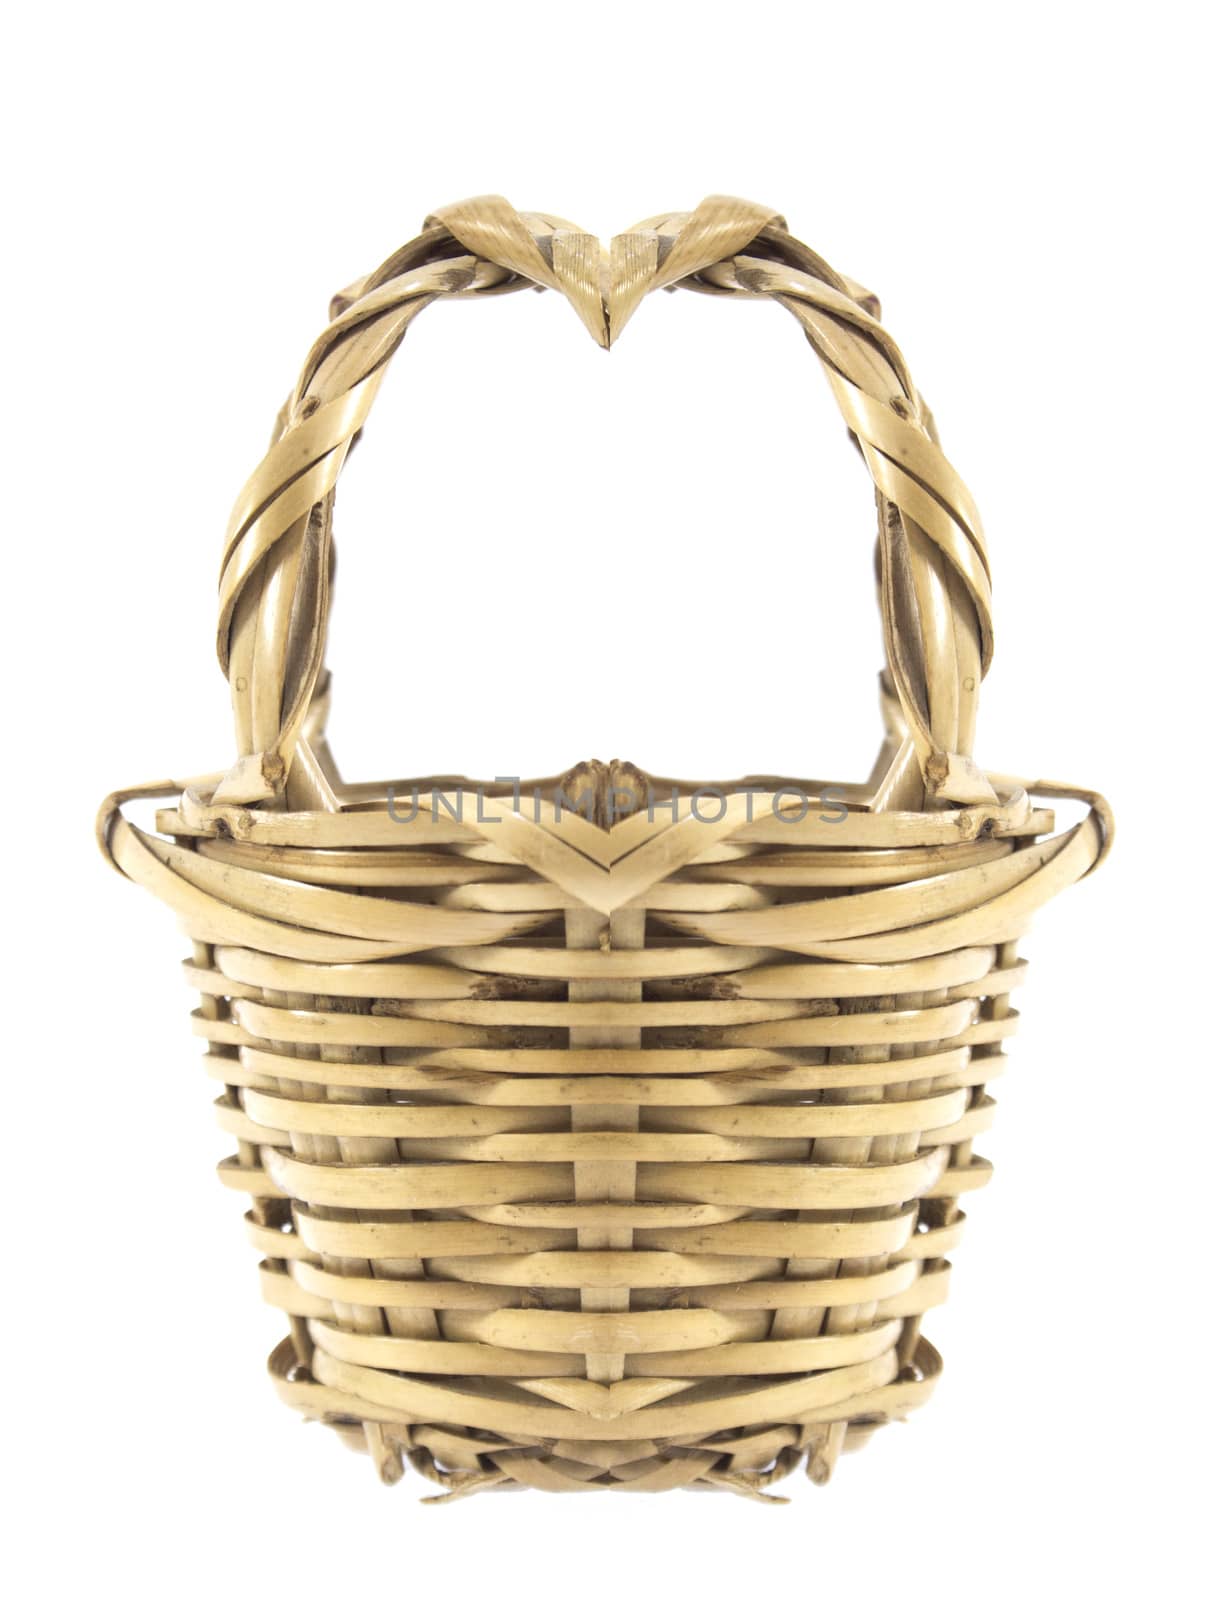 empty wicker basket by designsstock